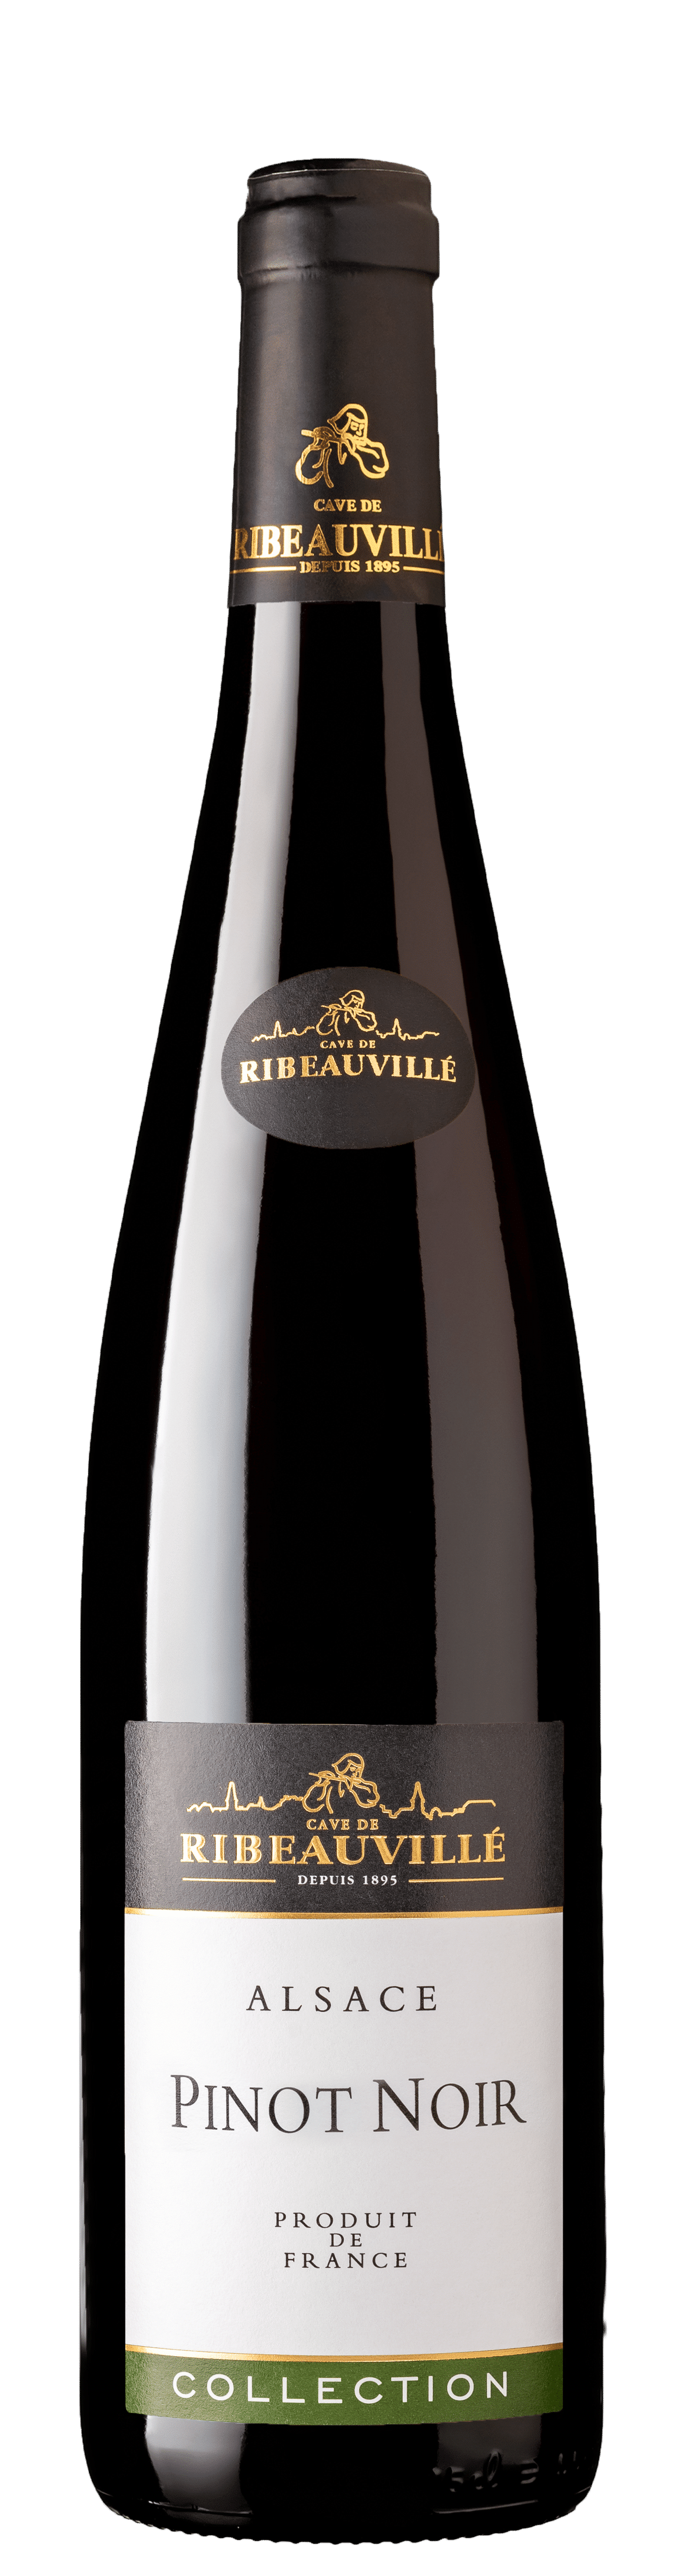 Bottle of Pinot Noir Collection, Cave de Ribeauvillé